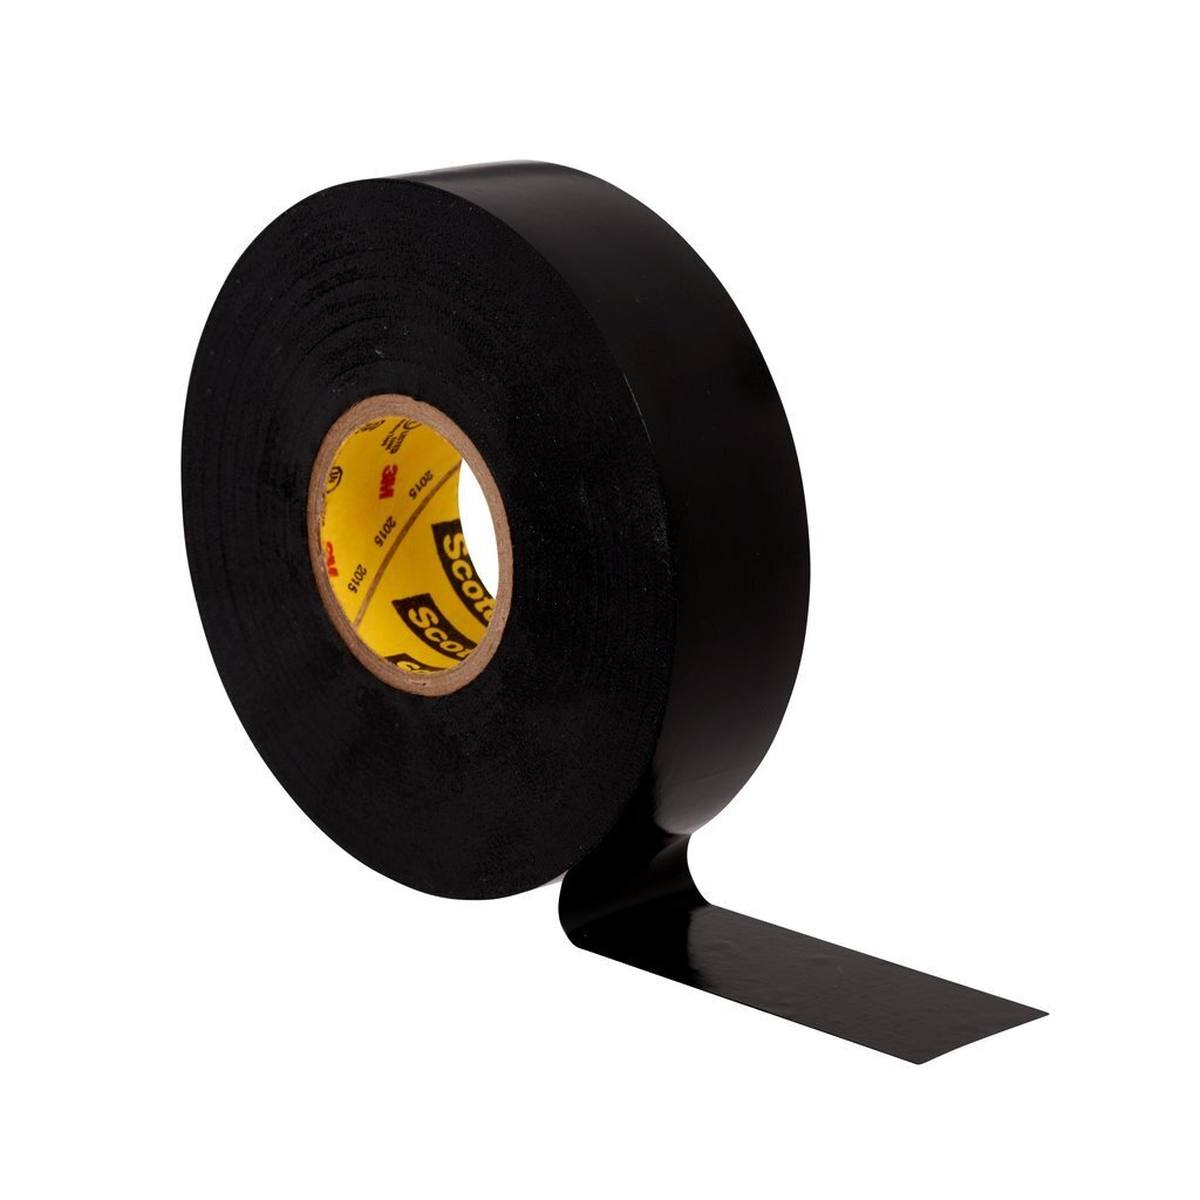 3M Scotch Super 33+ Vinyl Elektro-Isolierband, schwarz, 50 mm x 33 m, 0,18mm